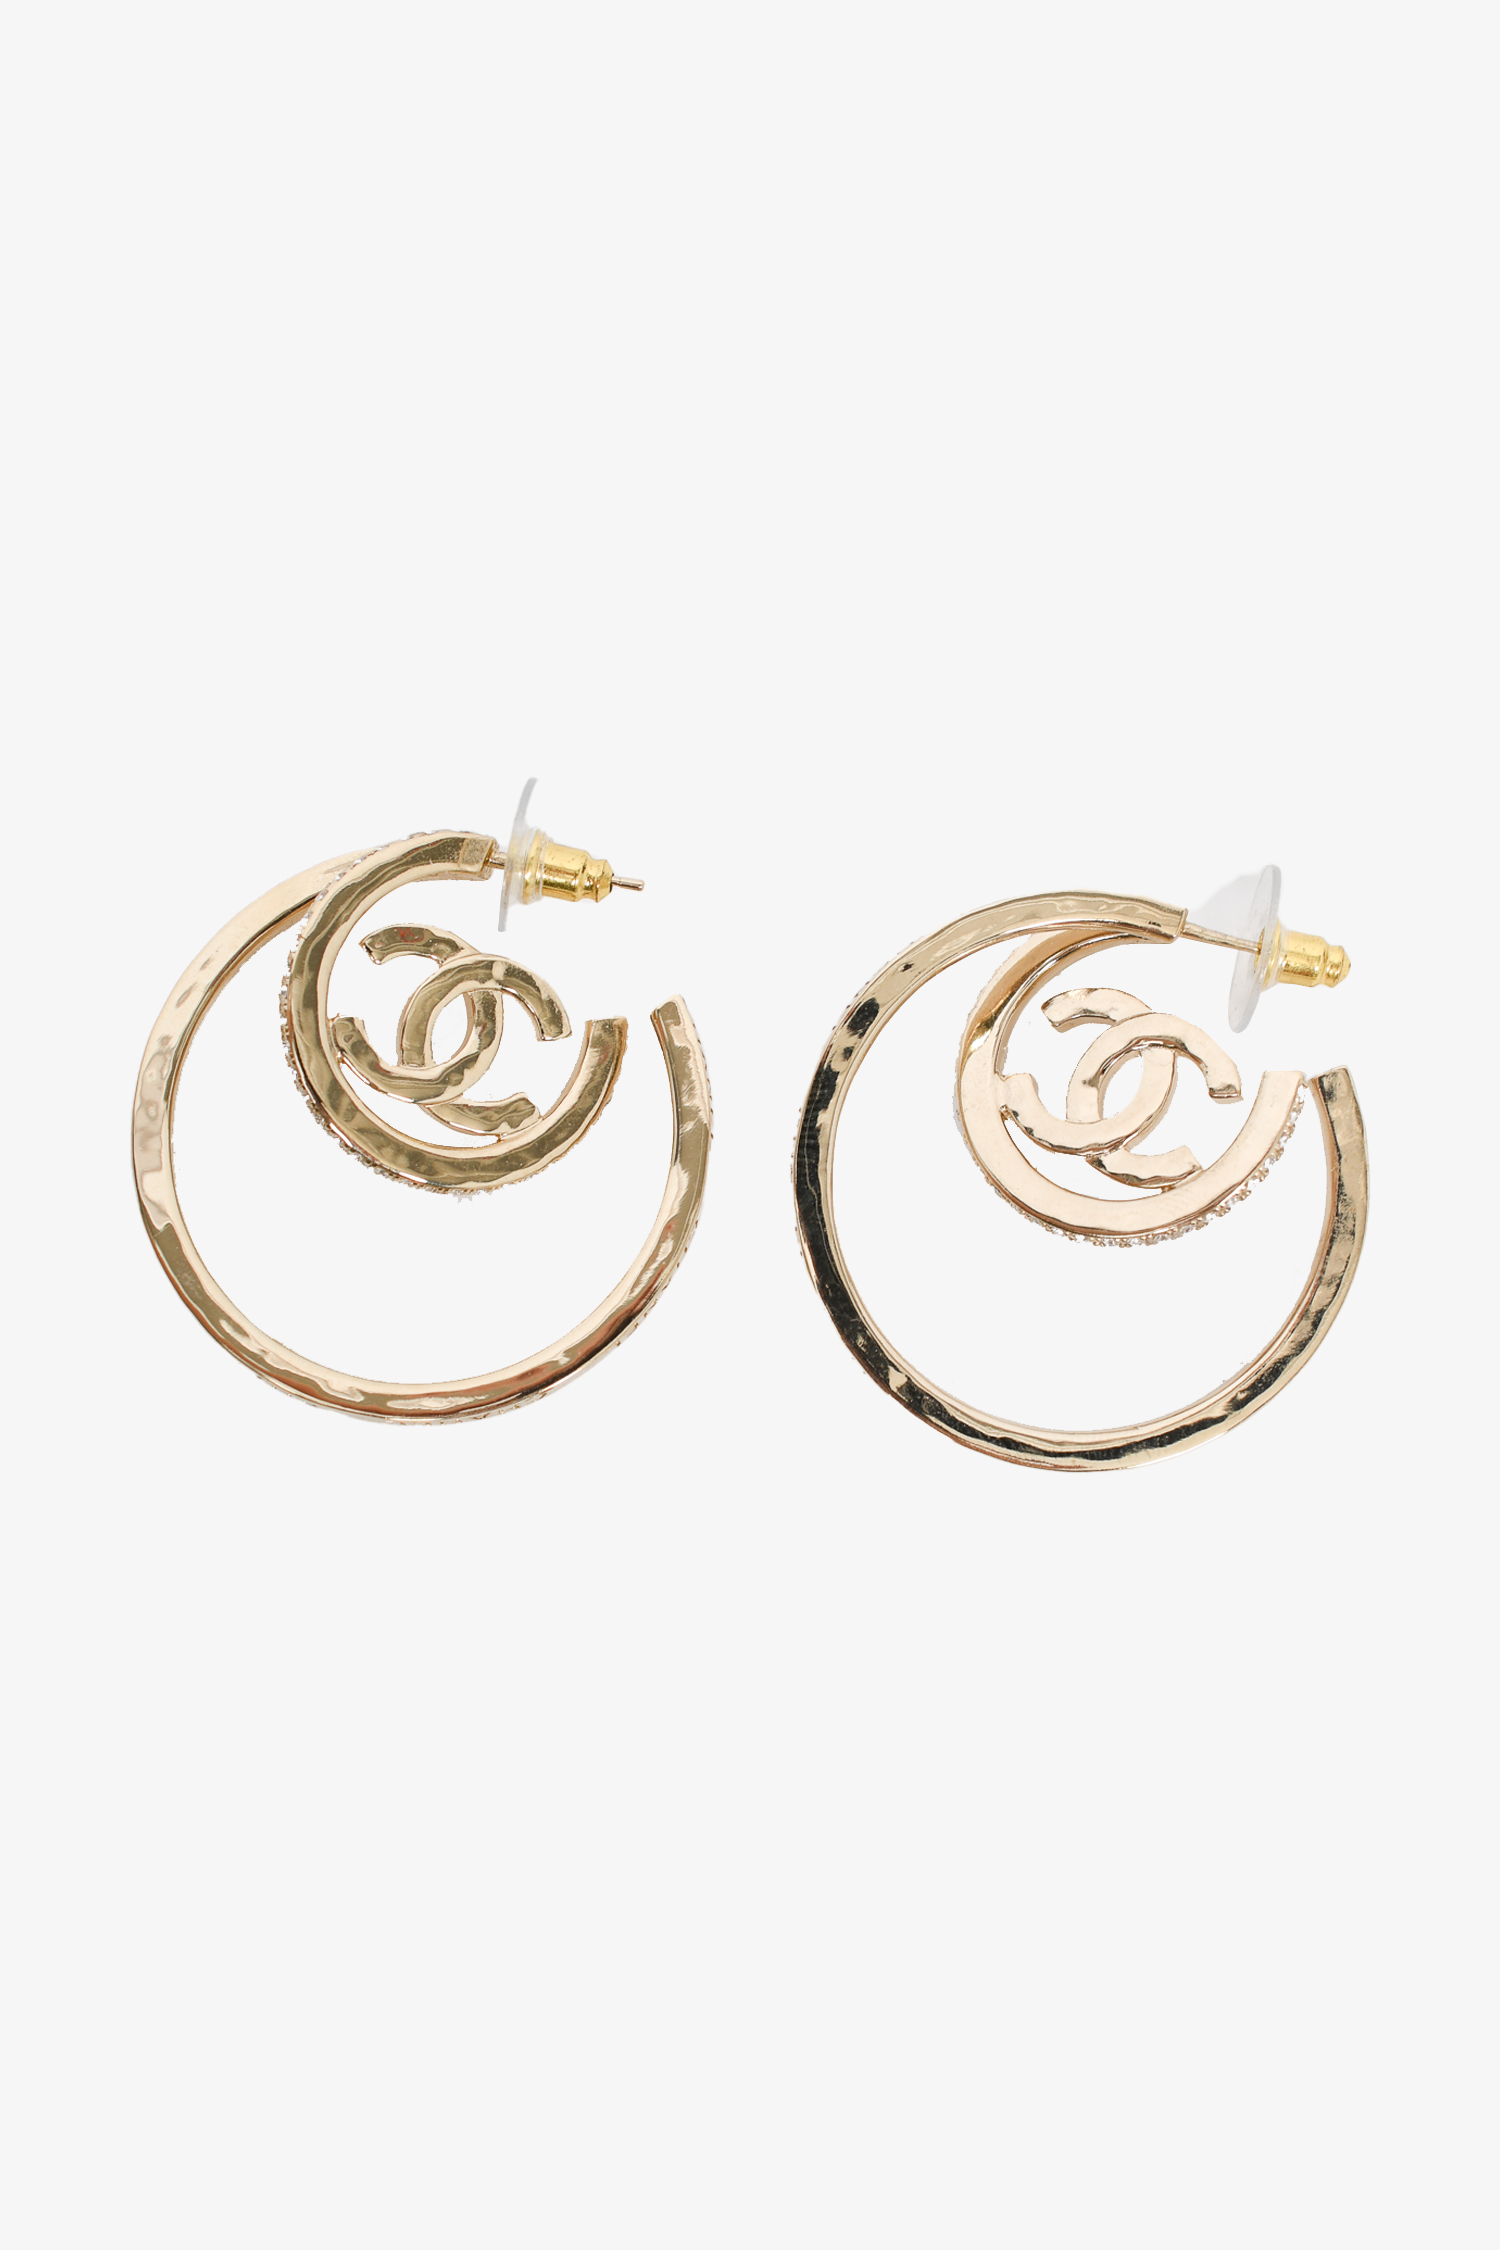 Chanel Earrings and ear cuffs for Women